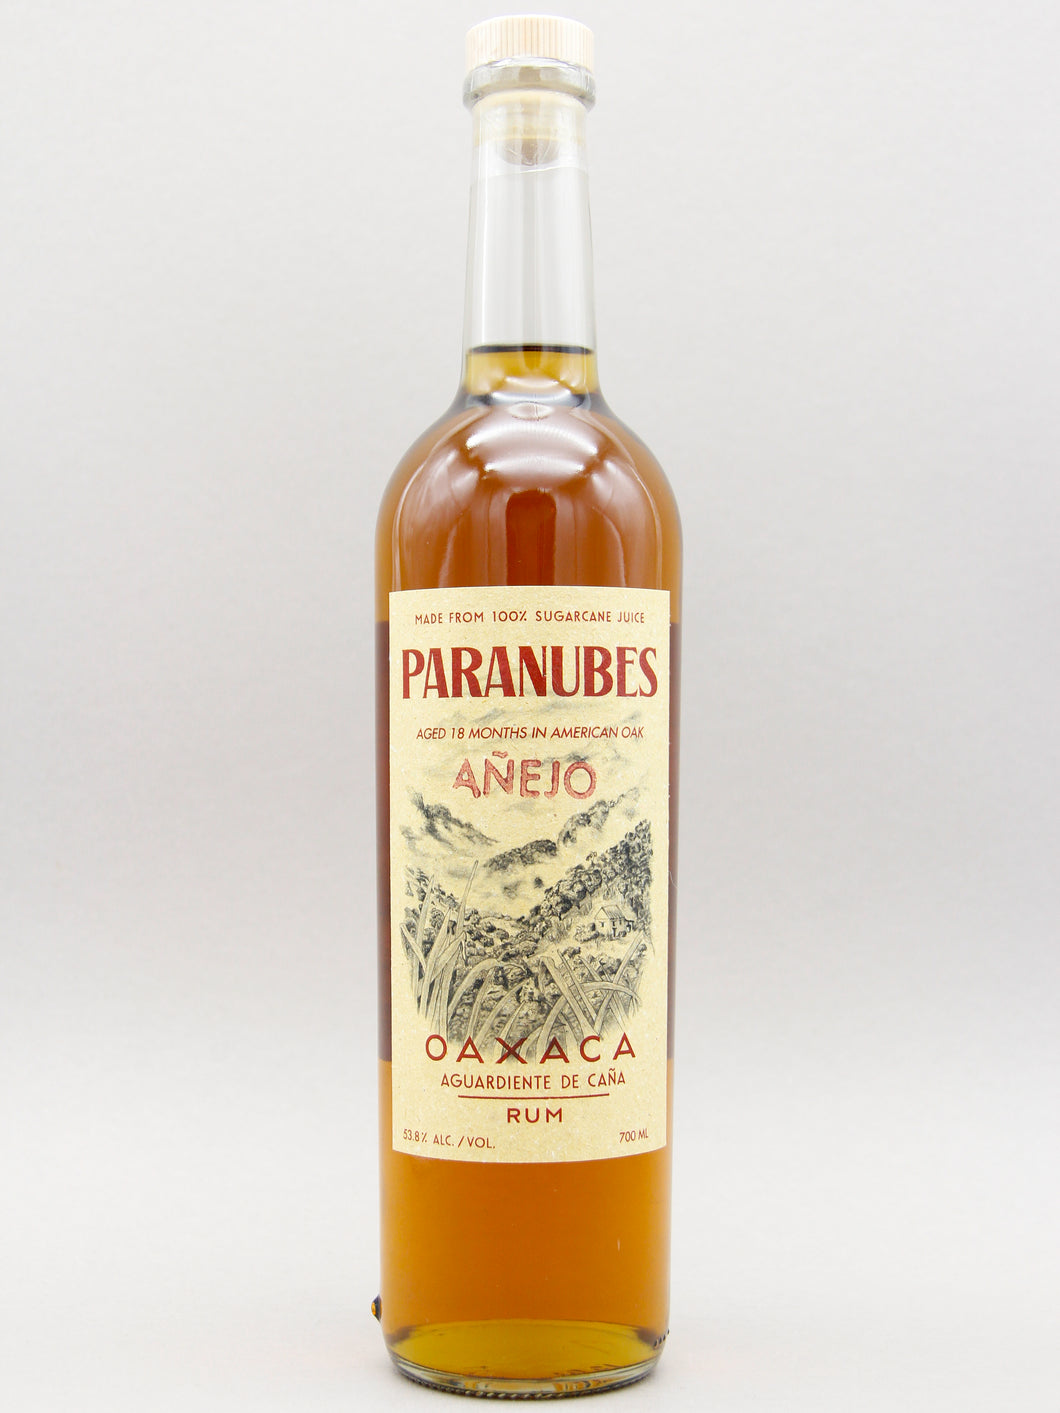 Paranubes Añejo Rum, Aguardiente De Caña, Oaxaca, Mexico (53.8%, 70cl)